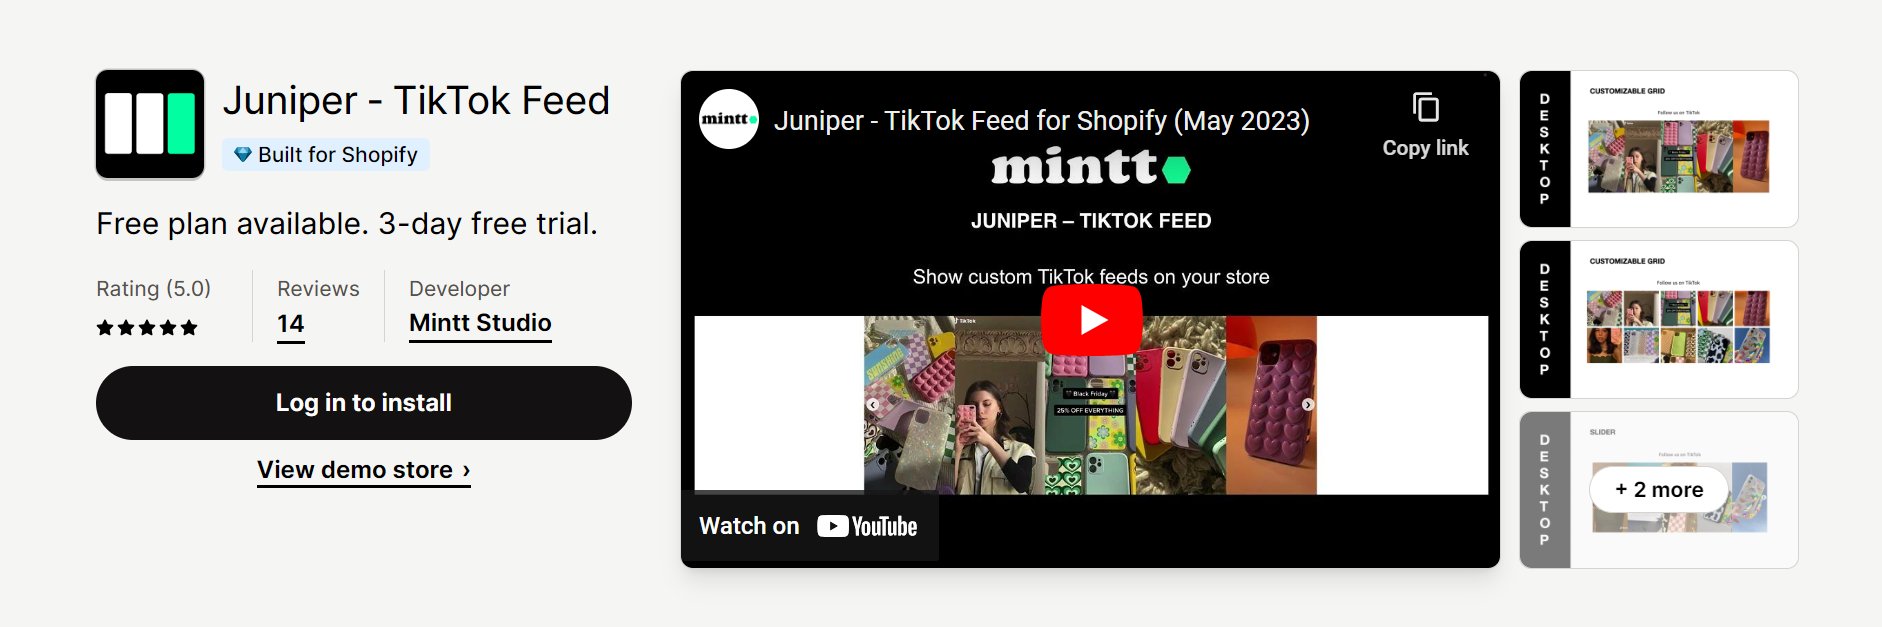 Juniper ‑ TikTok Feed